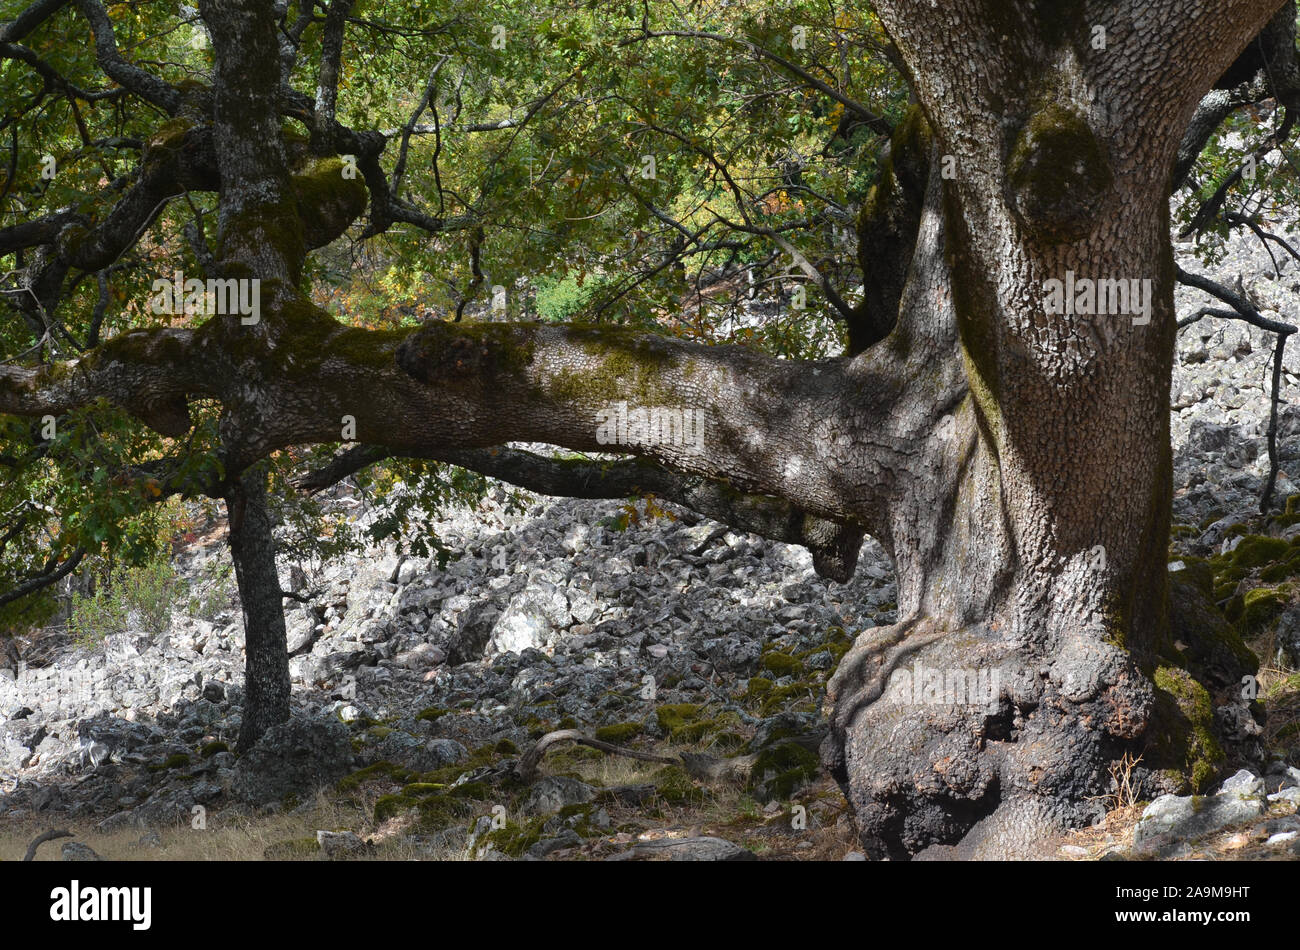 El abuelo, un centenario roble en el parque natural de Sierra Madrona, al sur de España Foto de stock